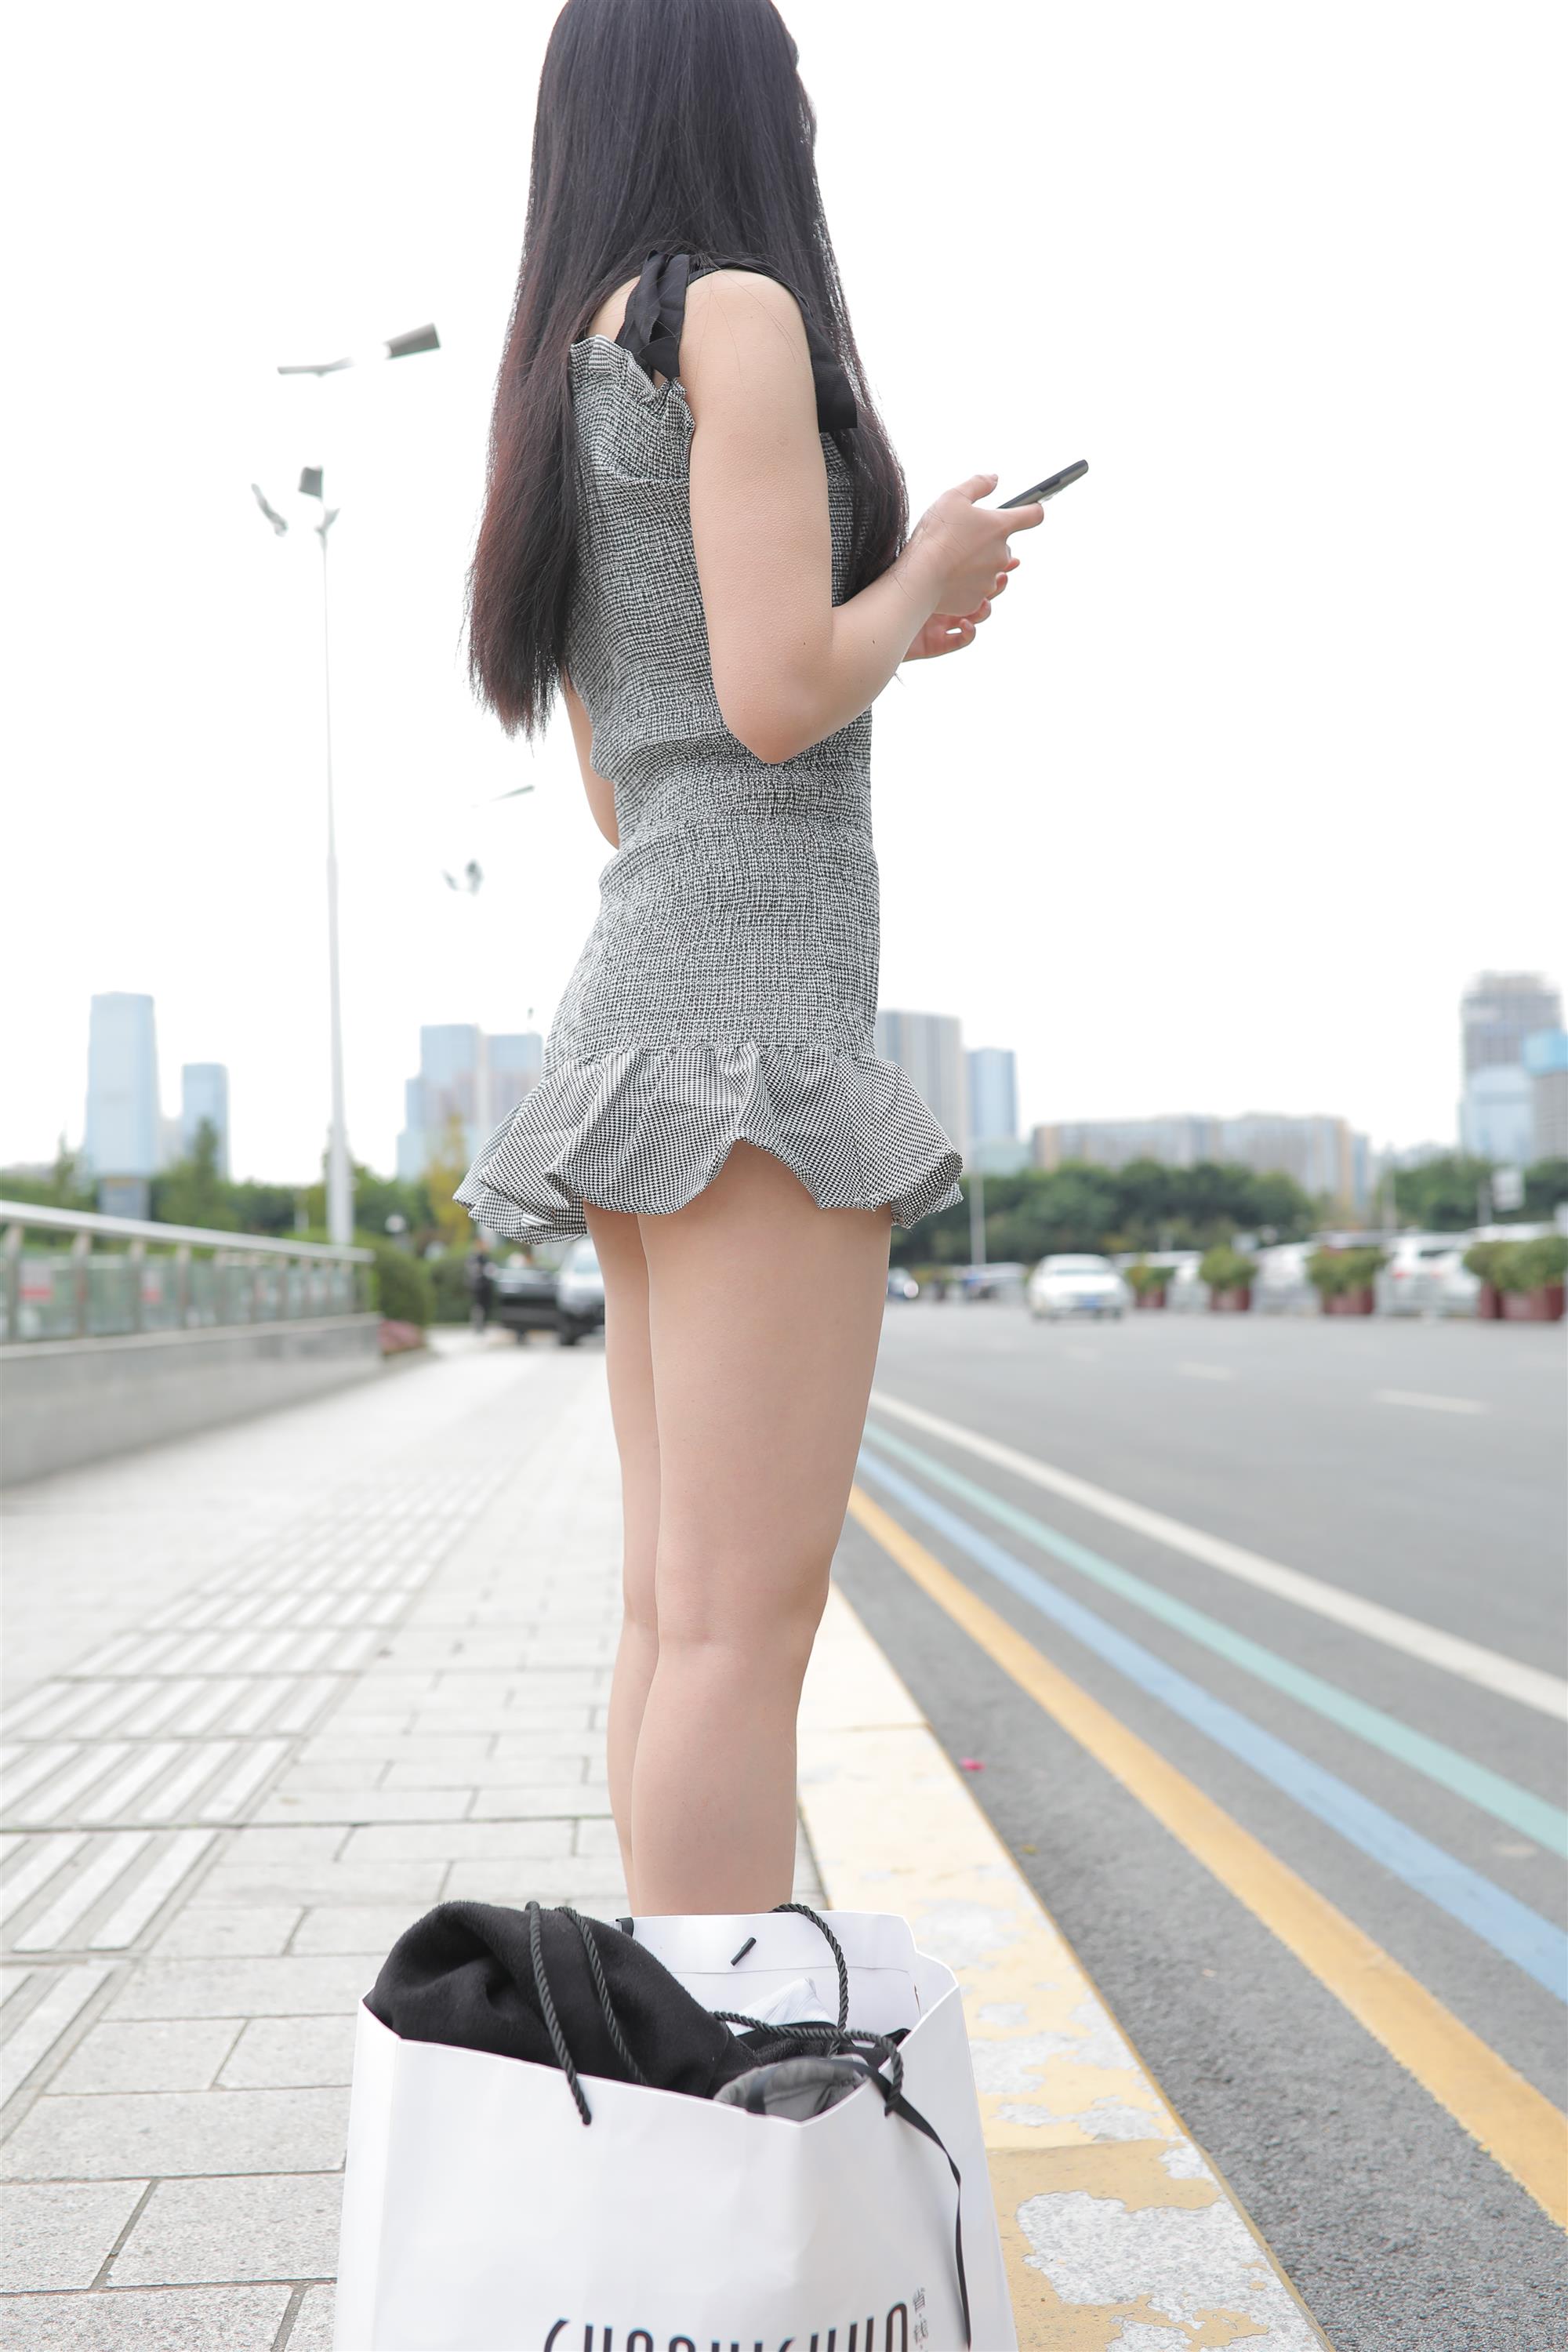 Street Girl In Short Skirt - 156.jpg